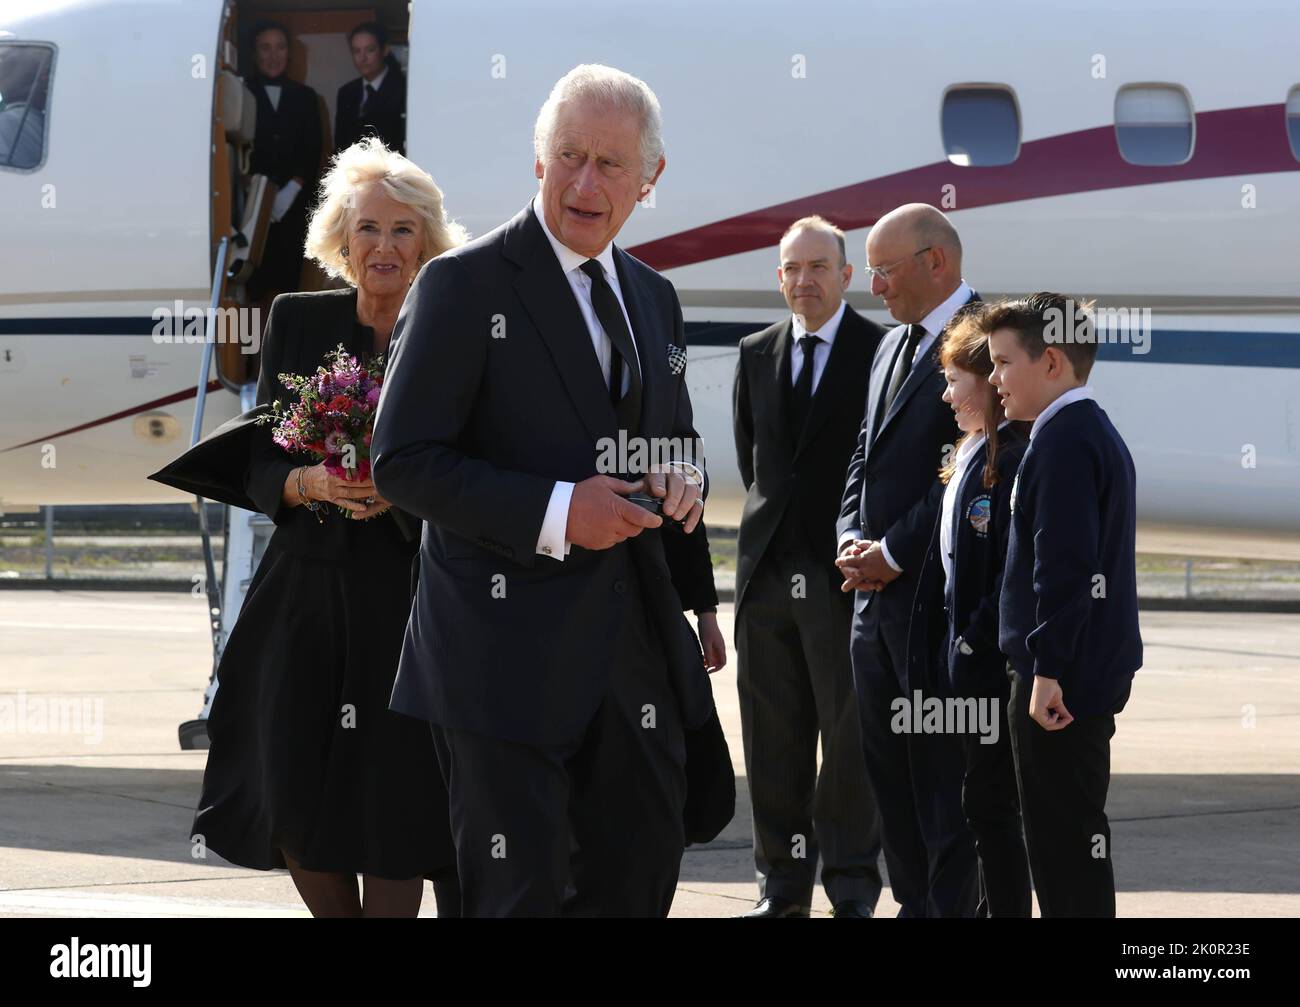 König Charles III und der Queen Consort kommen am Flughafen Belfast City an, während der König seine Tour durch die vier Heimatländer in Nordirland fortsetzt. Bilddatum: Dienstag, 13. September 2022. Stockfoto